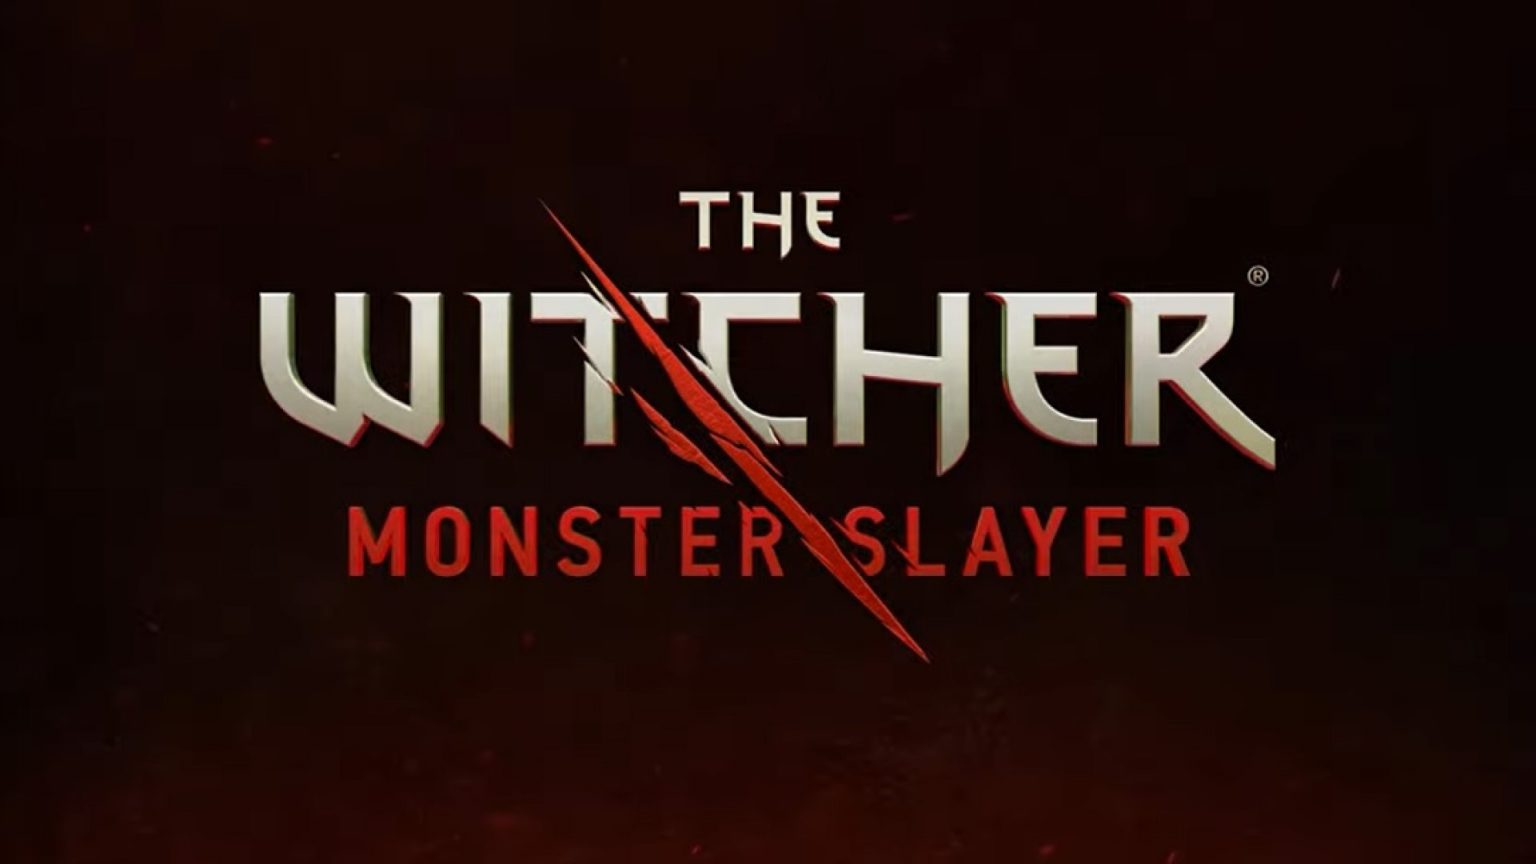 تاریخ انتشار بازی The Witcher: Monster Slayer اعلام شد